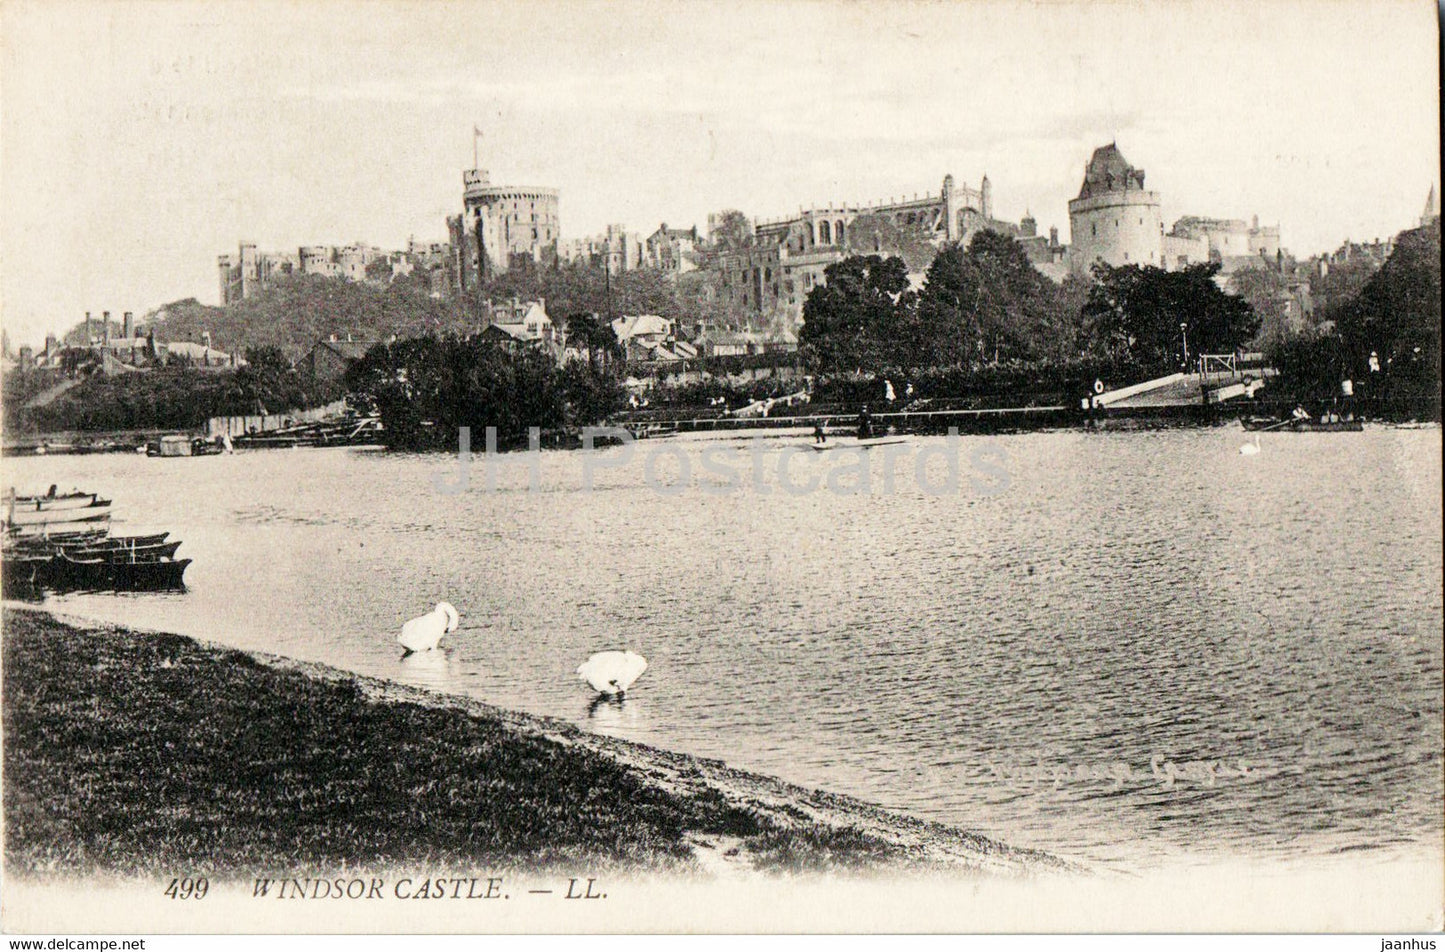 Windsor Castle - 499 - old postcard - England - United Kingdom - unused - JH Postcards